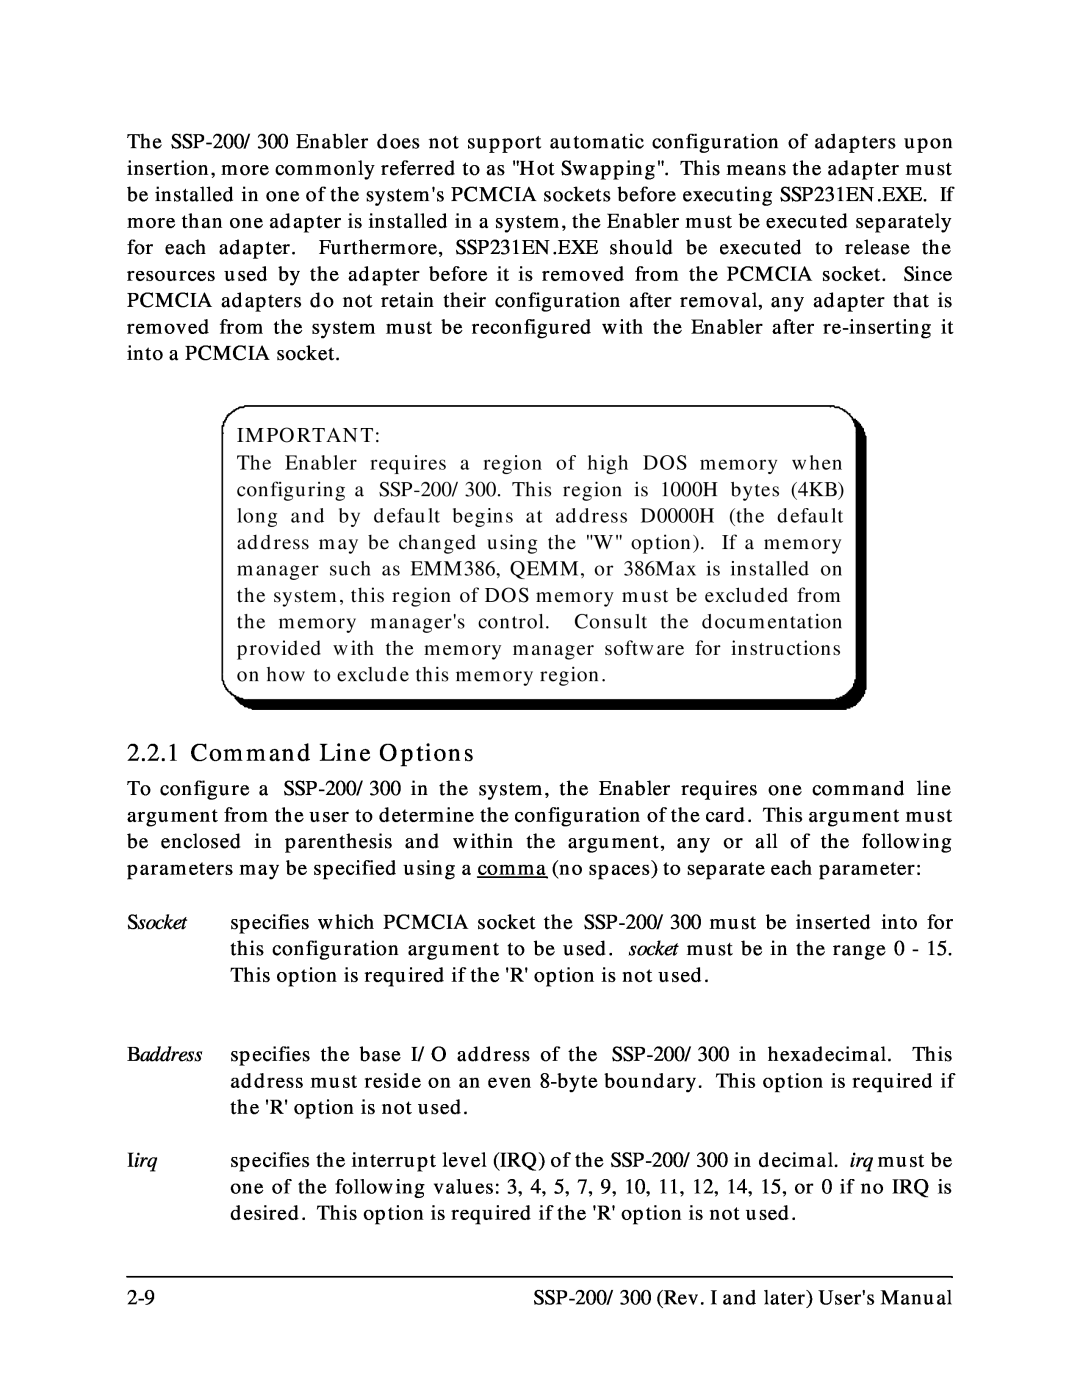 Quatech SSP-200, SSP-300 user manual Command Line Options, Baddress, Iirq 